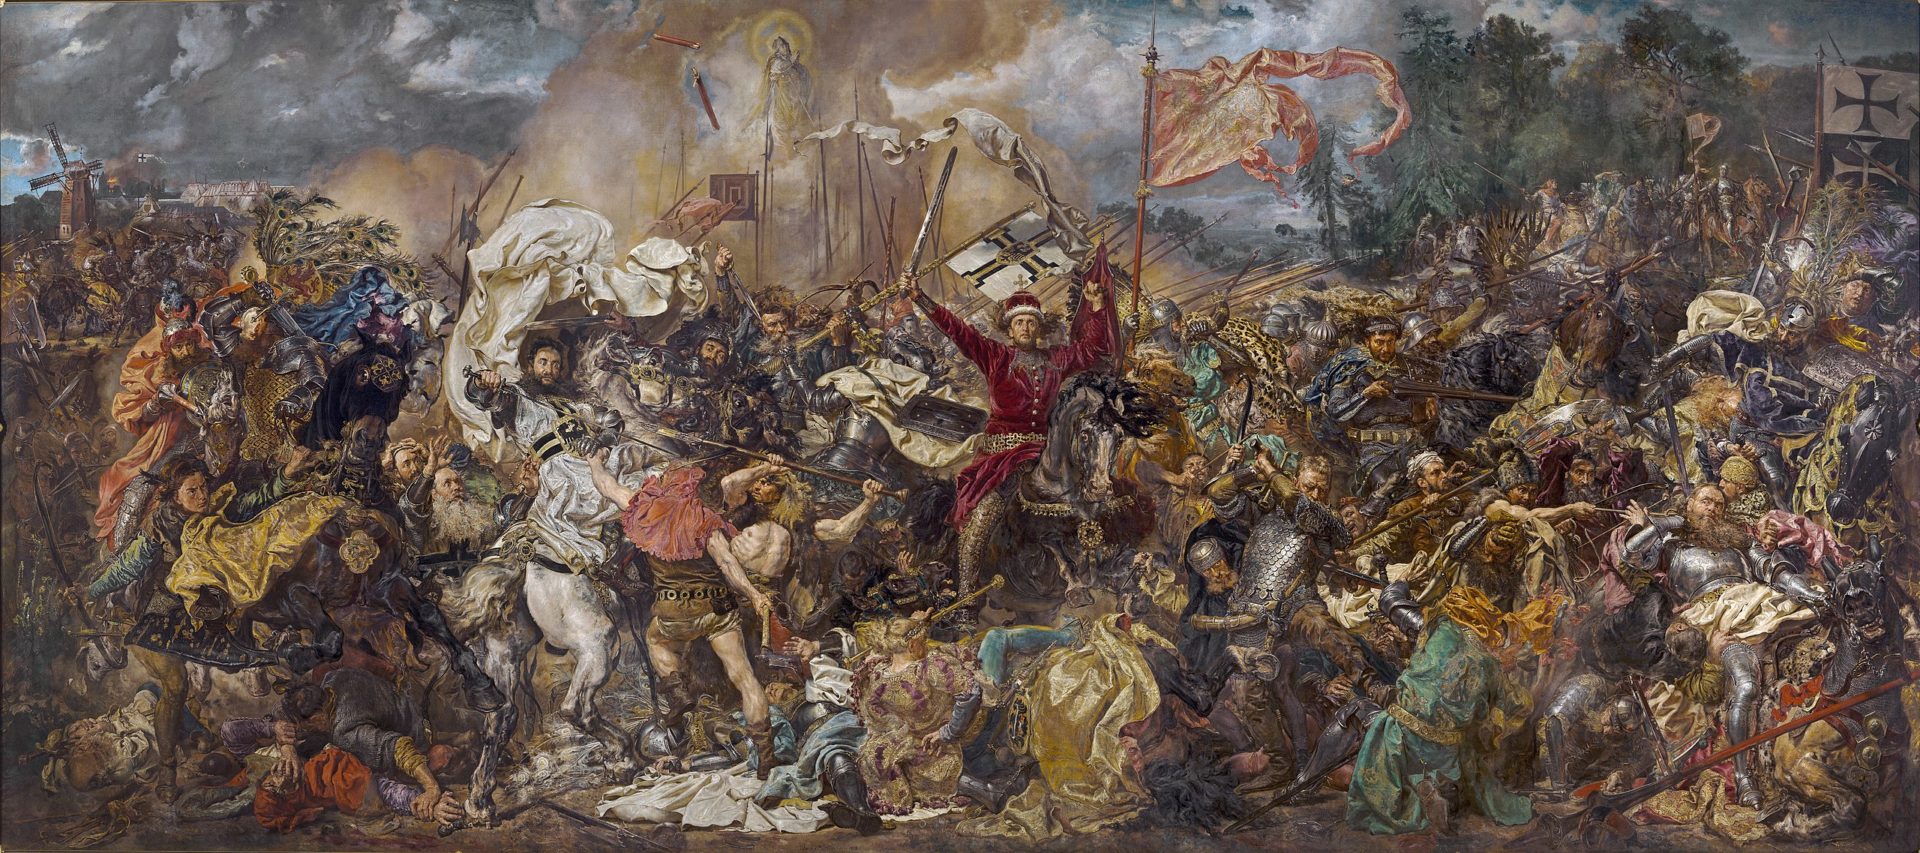 Die Schlacht von Grunwald von Jan Matejko (1878).